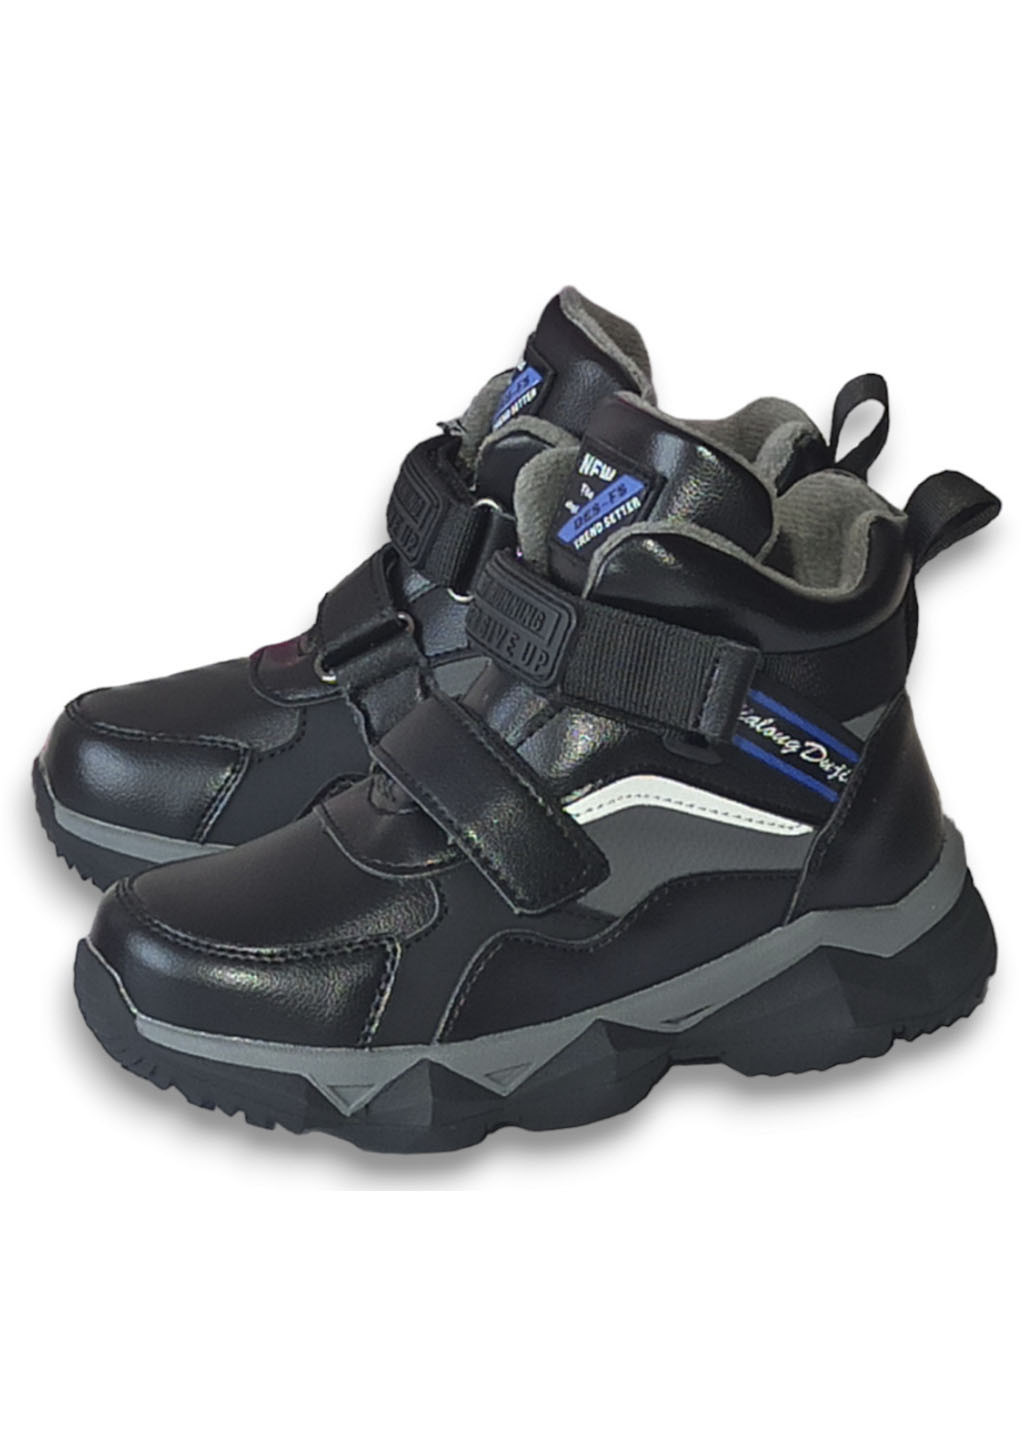 Черные повседневные осенние демисезонные ботинки хайтопы для мальчика утепленные на флисе том м 10120а черные Tom.M